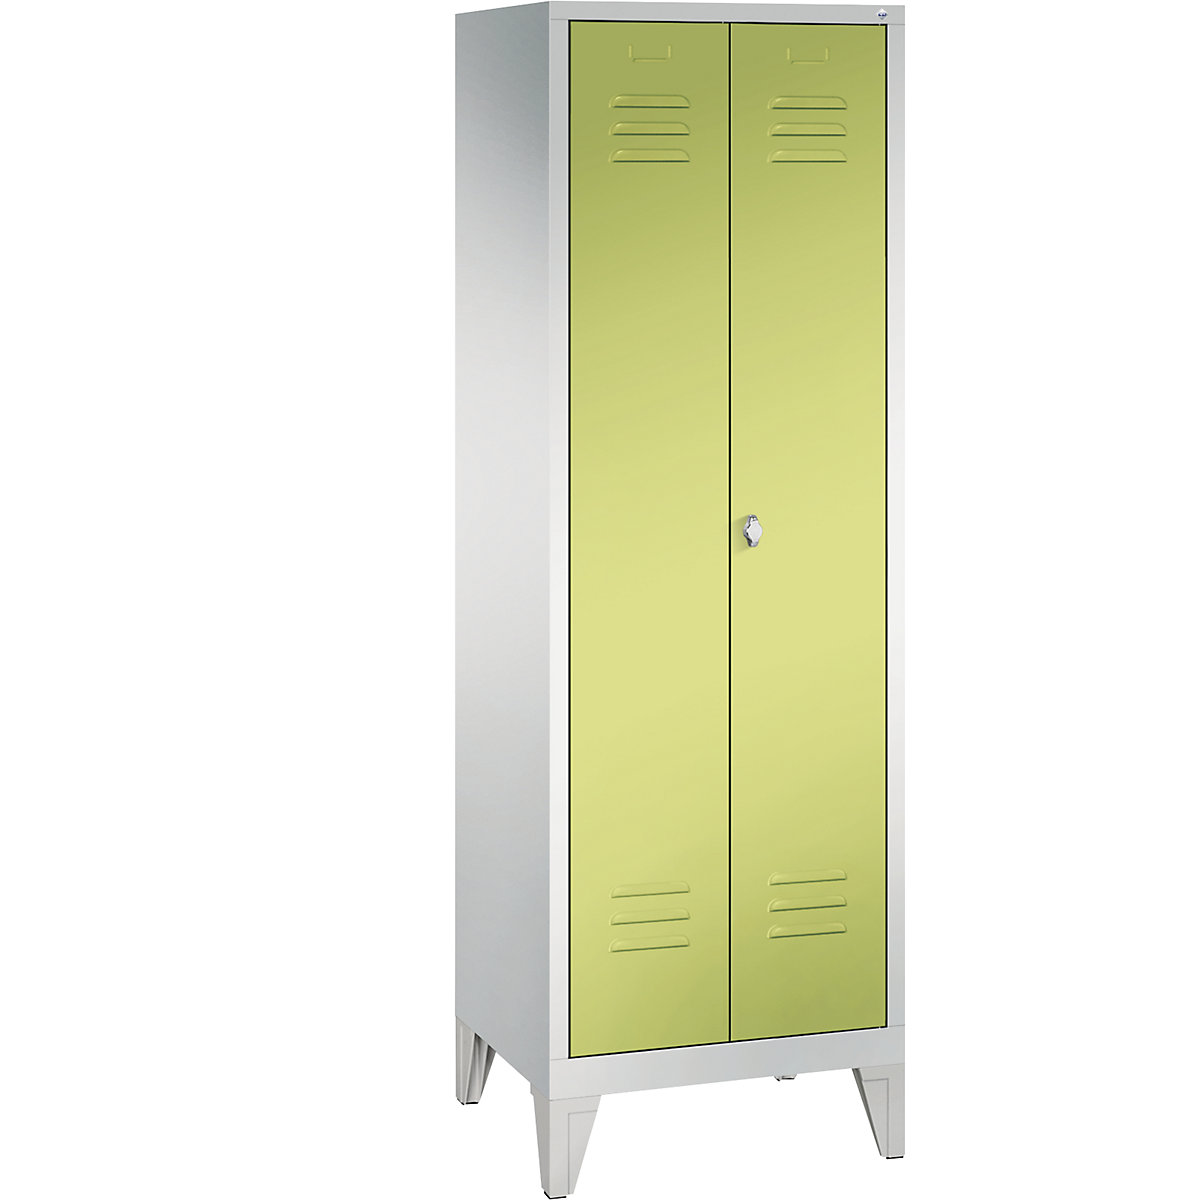 Omara za shranjevanje CLASSIC z nogami in dvokrilnimi vrati na stik – C+P, 2 predelka, širina predelka 300 mm, svetlo sive / rumeno zelene barve-13